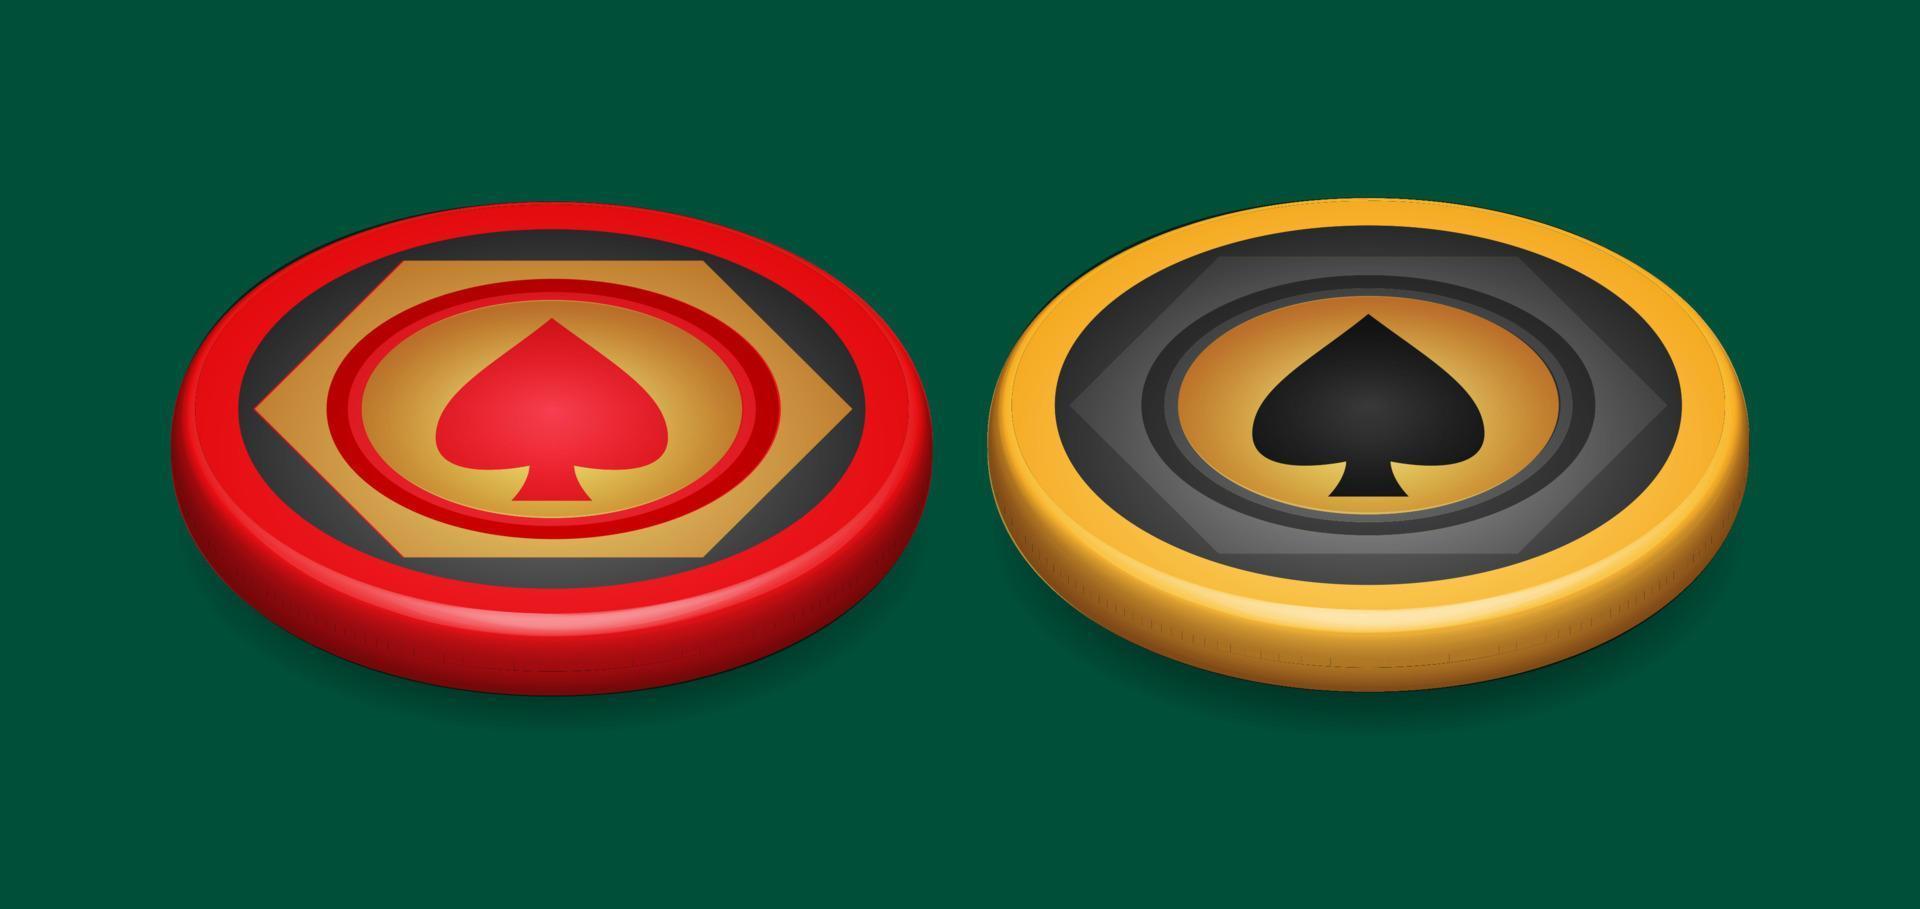 jeton de poker or et rouge, avec symbole de coeur, élément de conception de jeu, illustration vectorielle 3d vecteur